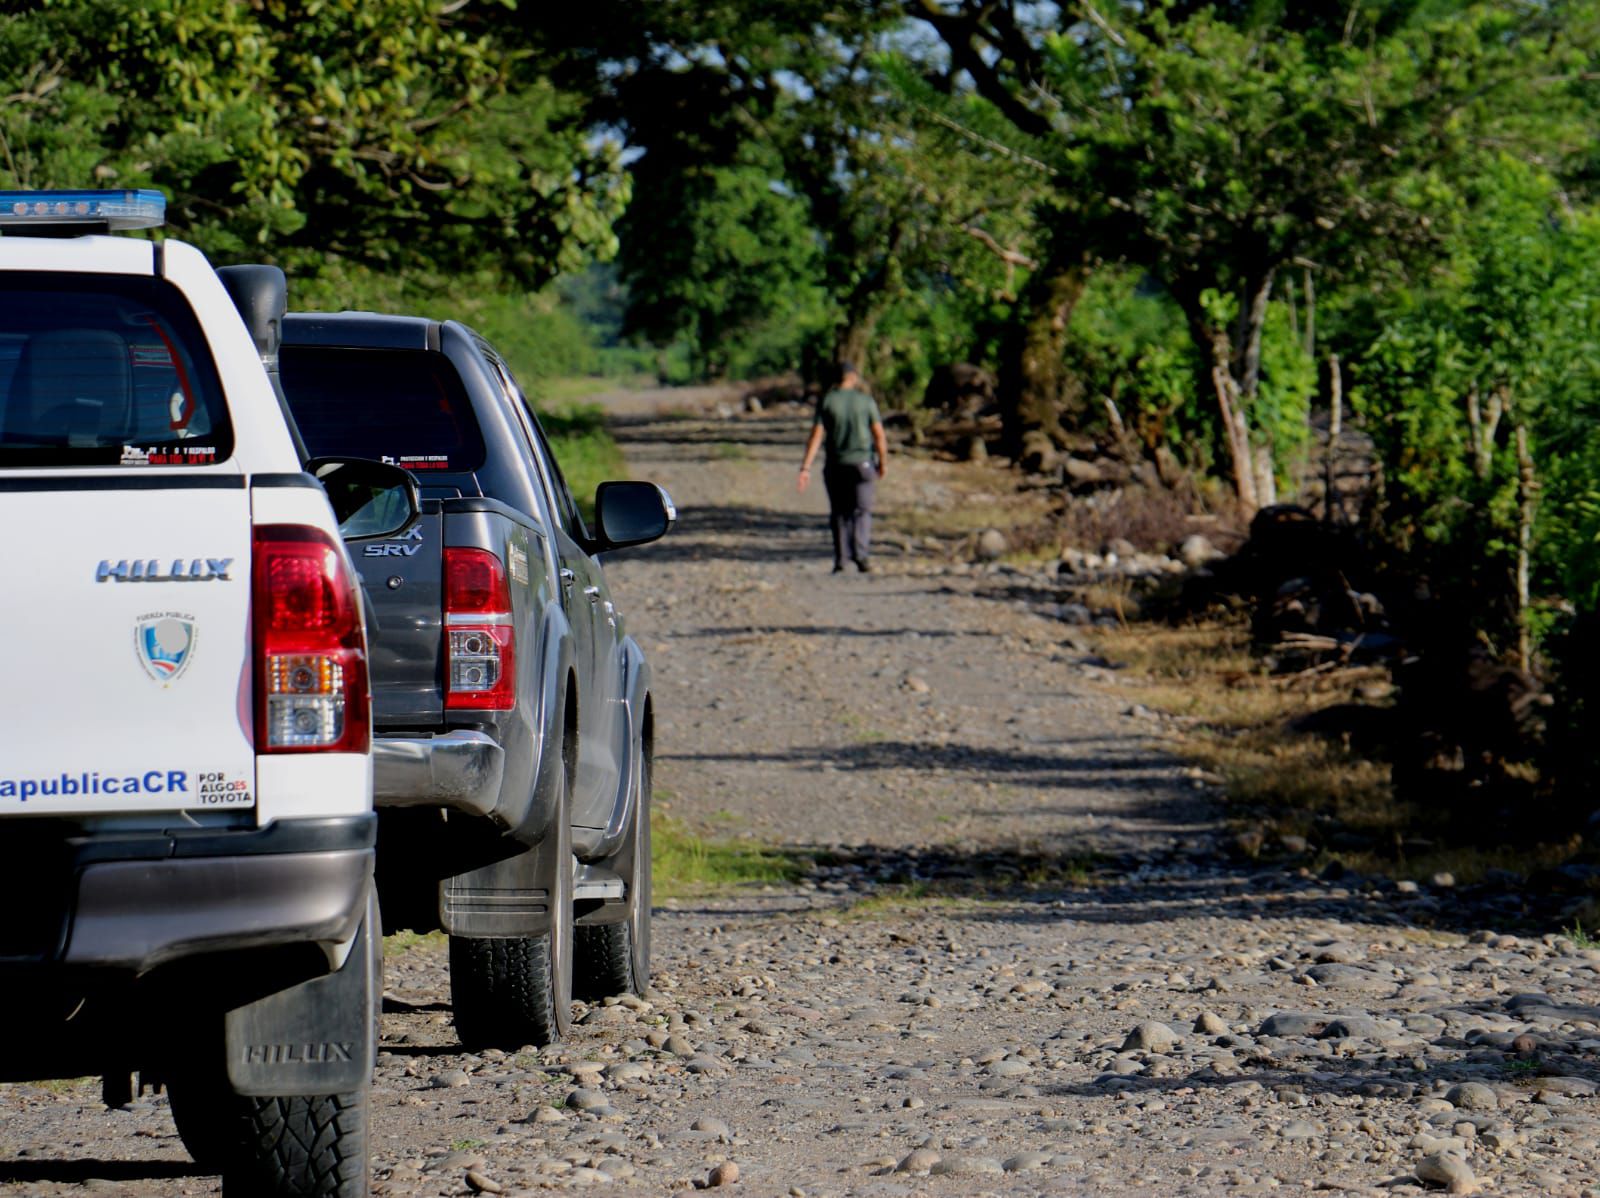 Las autoridades se encuentran custodiando la zona en busca de los sospechosos. Foto: Reiner Montero